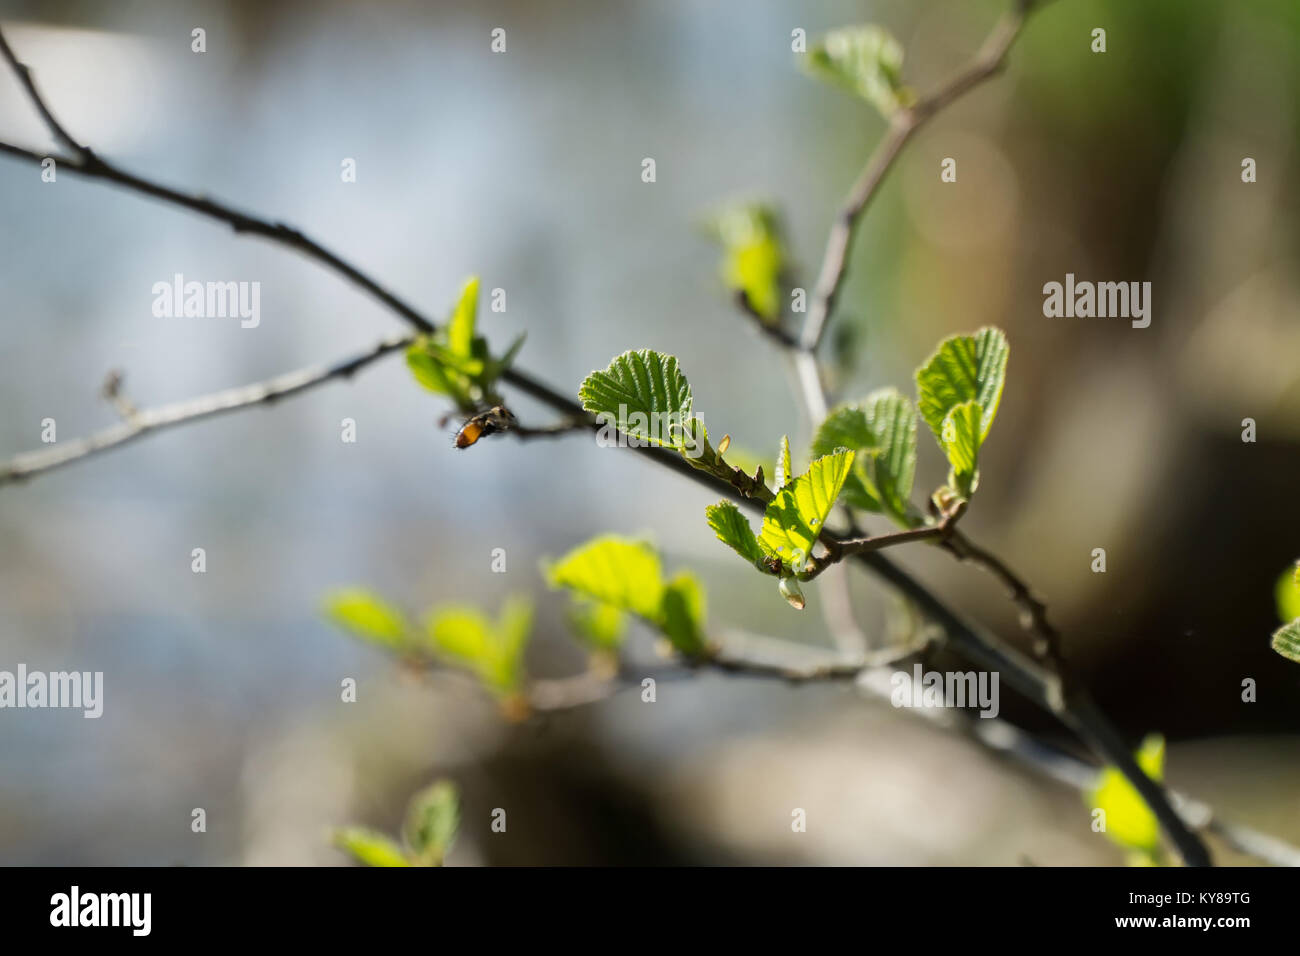 Zweige von Alnus glutinosa (Gemeinsame ald) mit frischen jungen grünen Blätter im Frühling. Die Blätter sind von der Sonne hervorgehoben. Unscharfer Hintergrund, selektive konzentrieren. Stockfoto